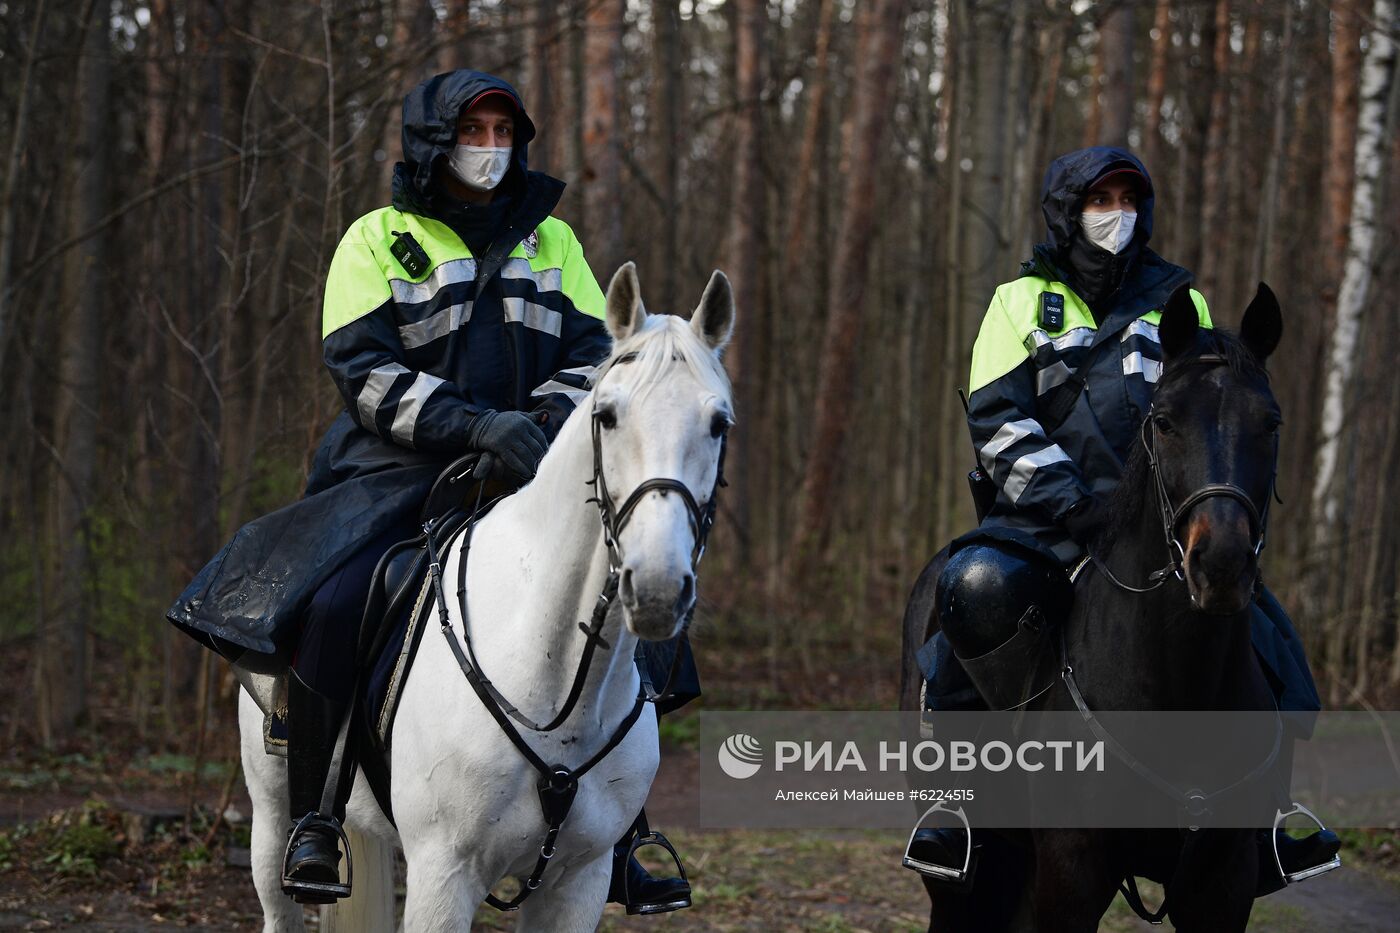 Патрулирование конной полицией улиц в Москве